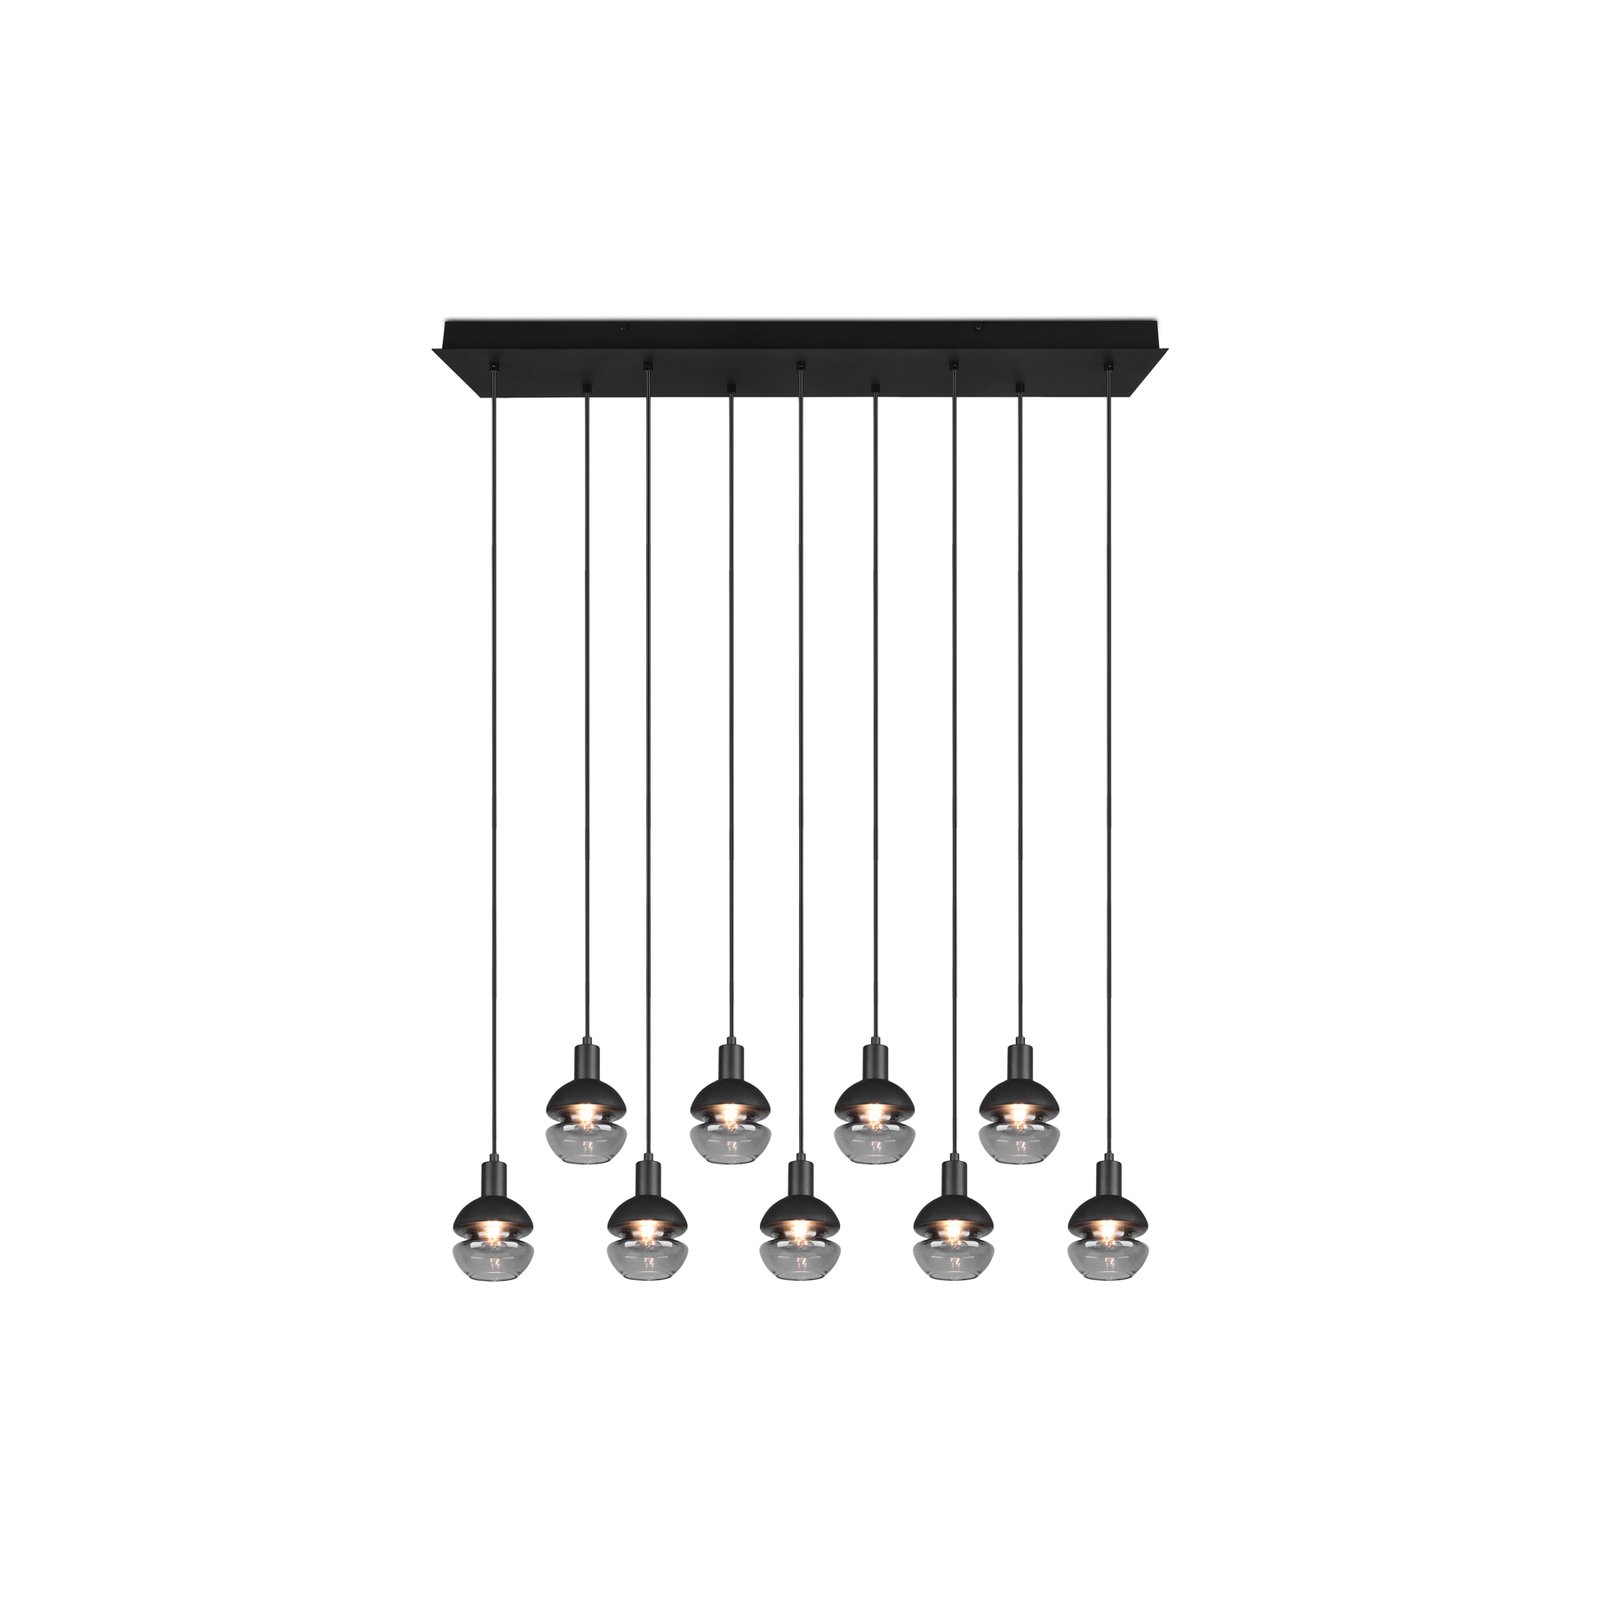 Hanglamp Mela, hoekig, 9-lamps, zwart